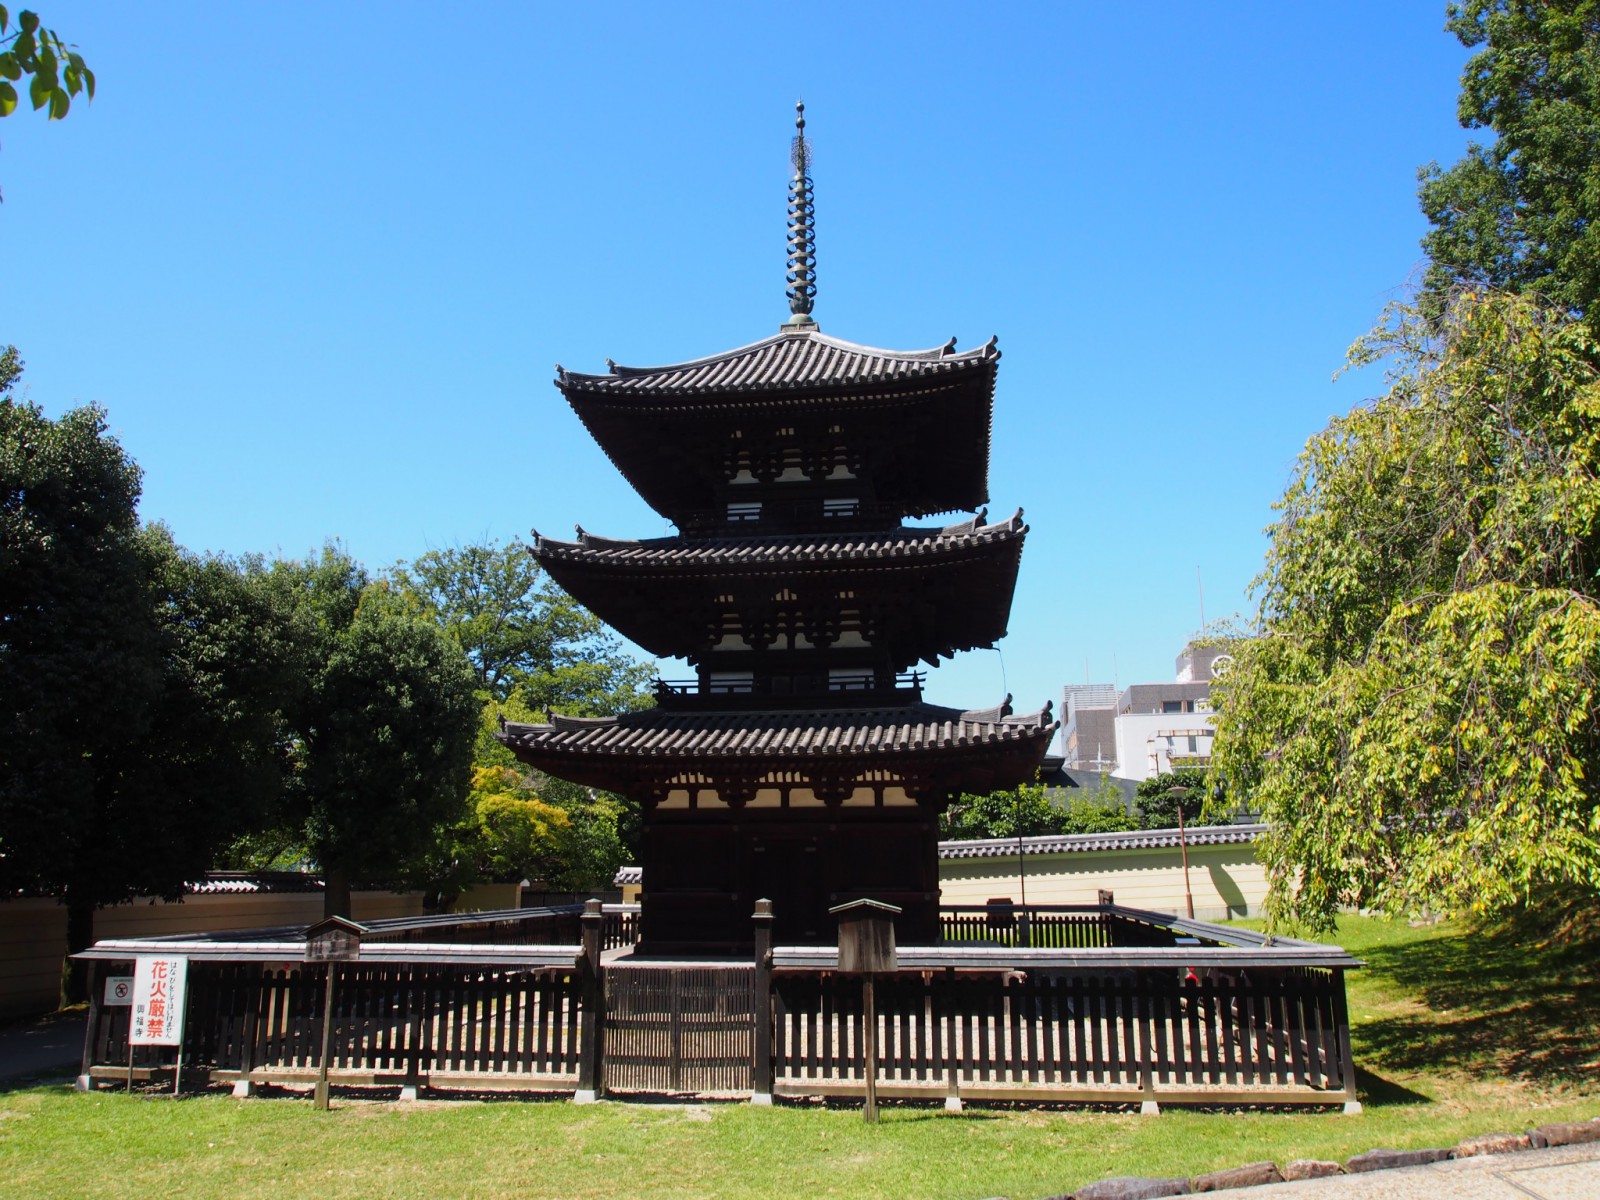 興福寺三重塔を正面から望む